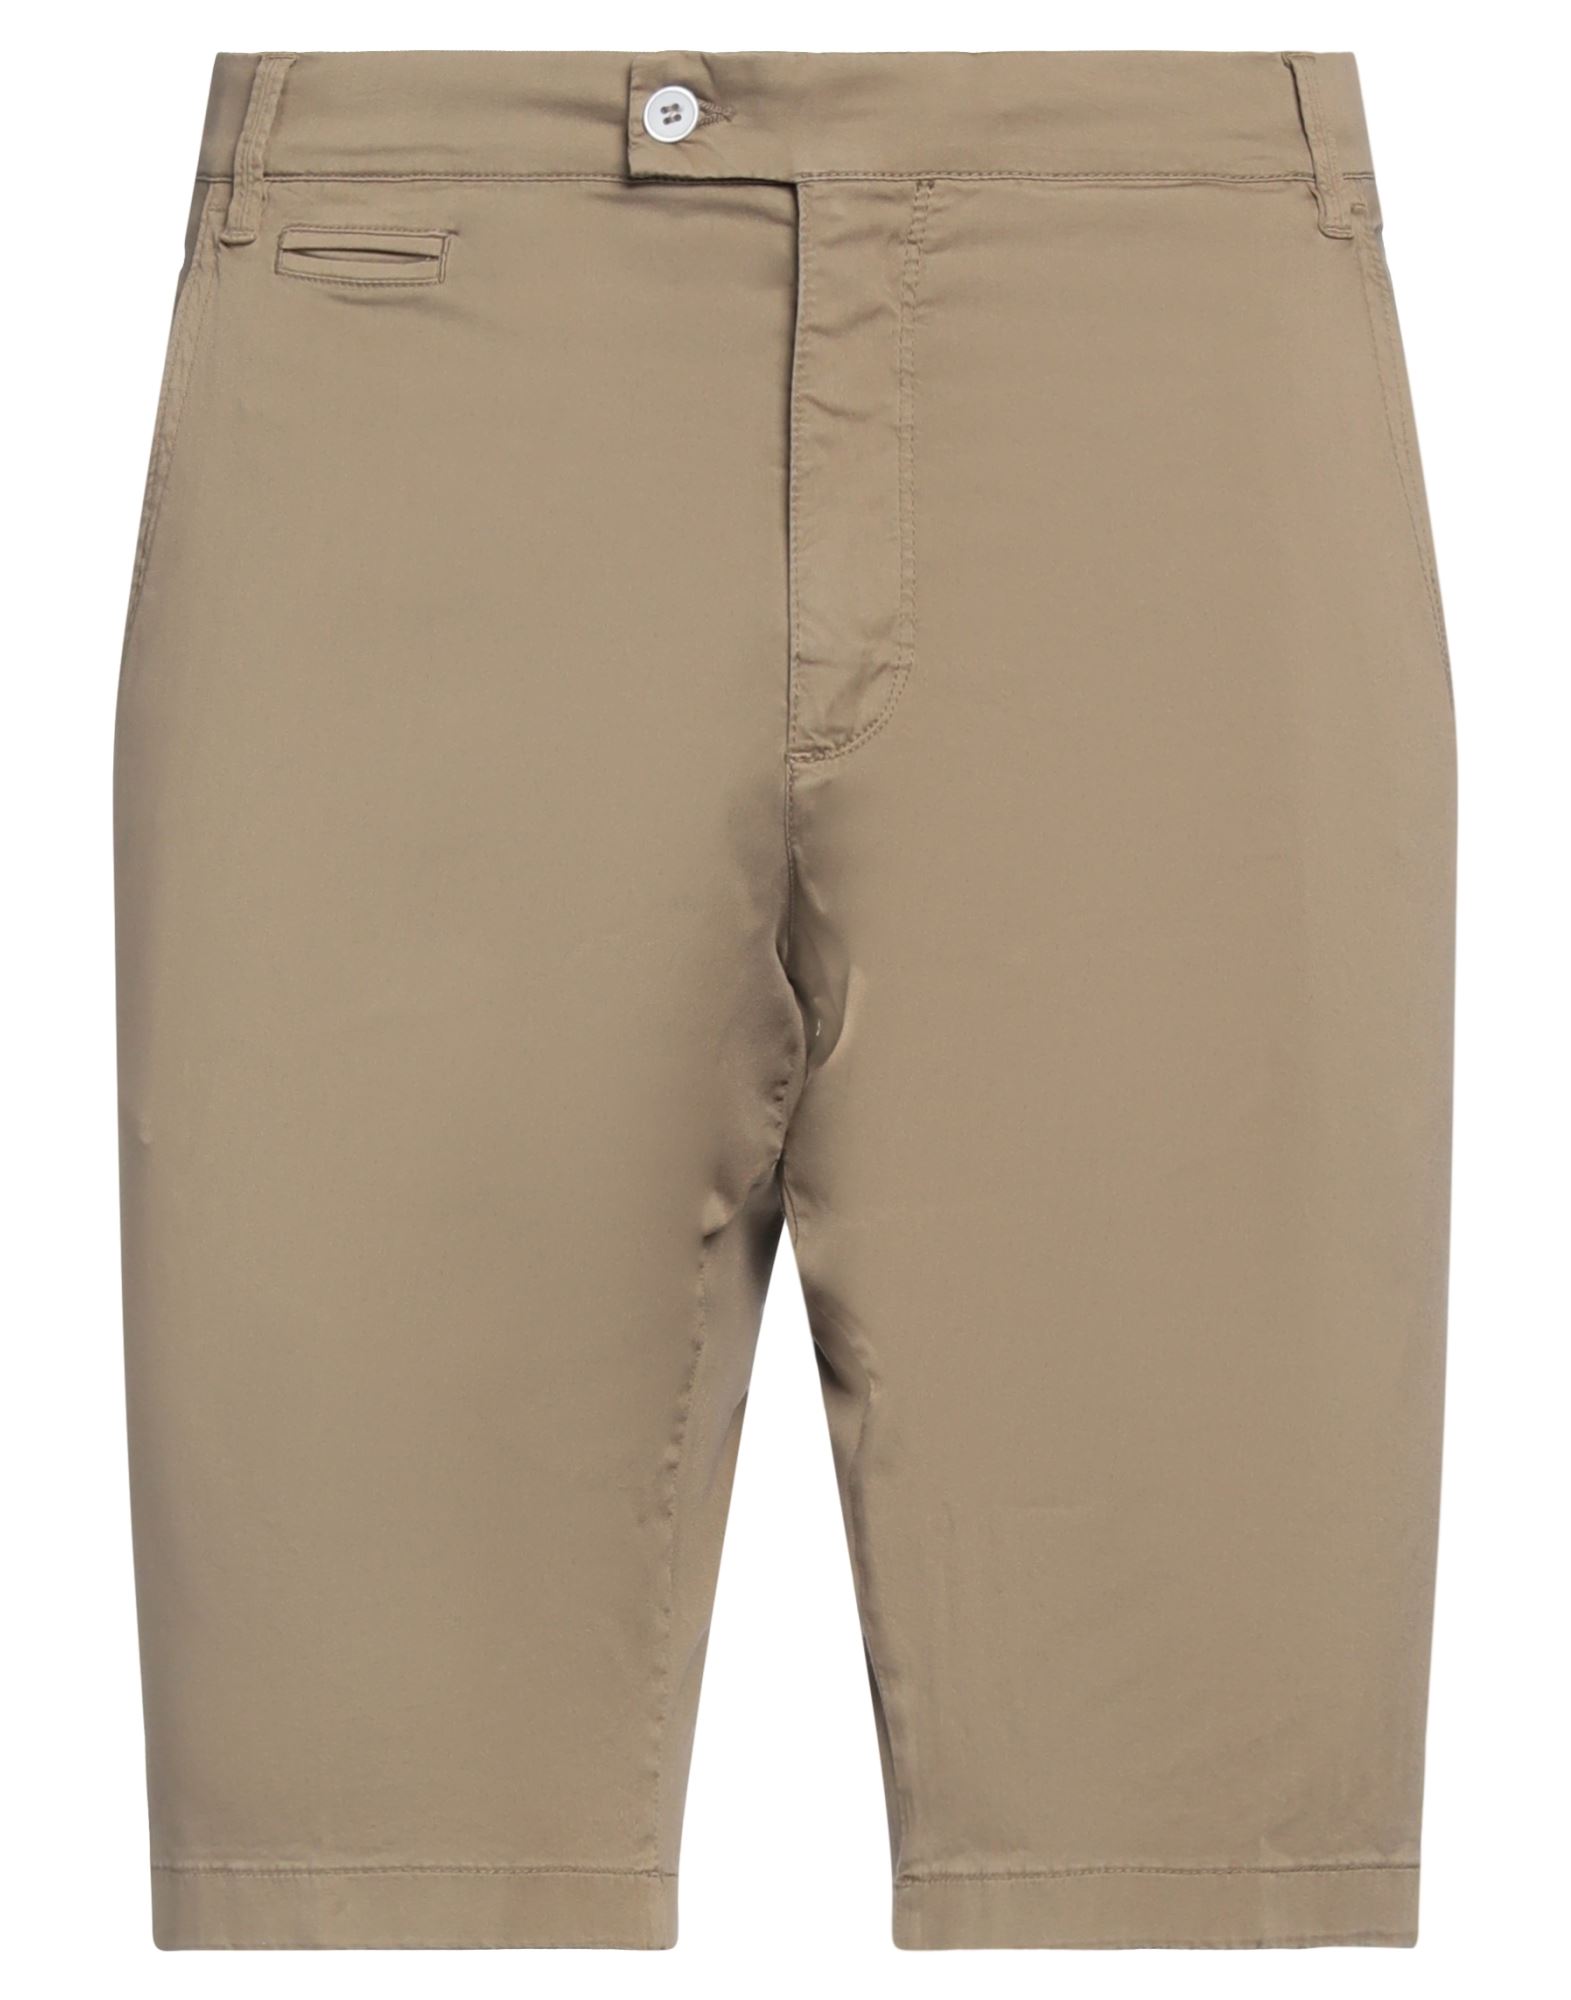 Panama Man Shorts & Bermuda Shorts Khaki Size 34 Cotton, Elastane In Beige